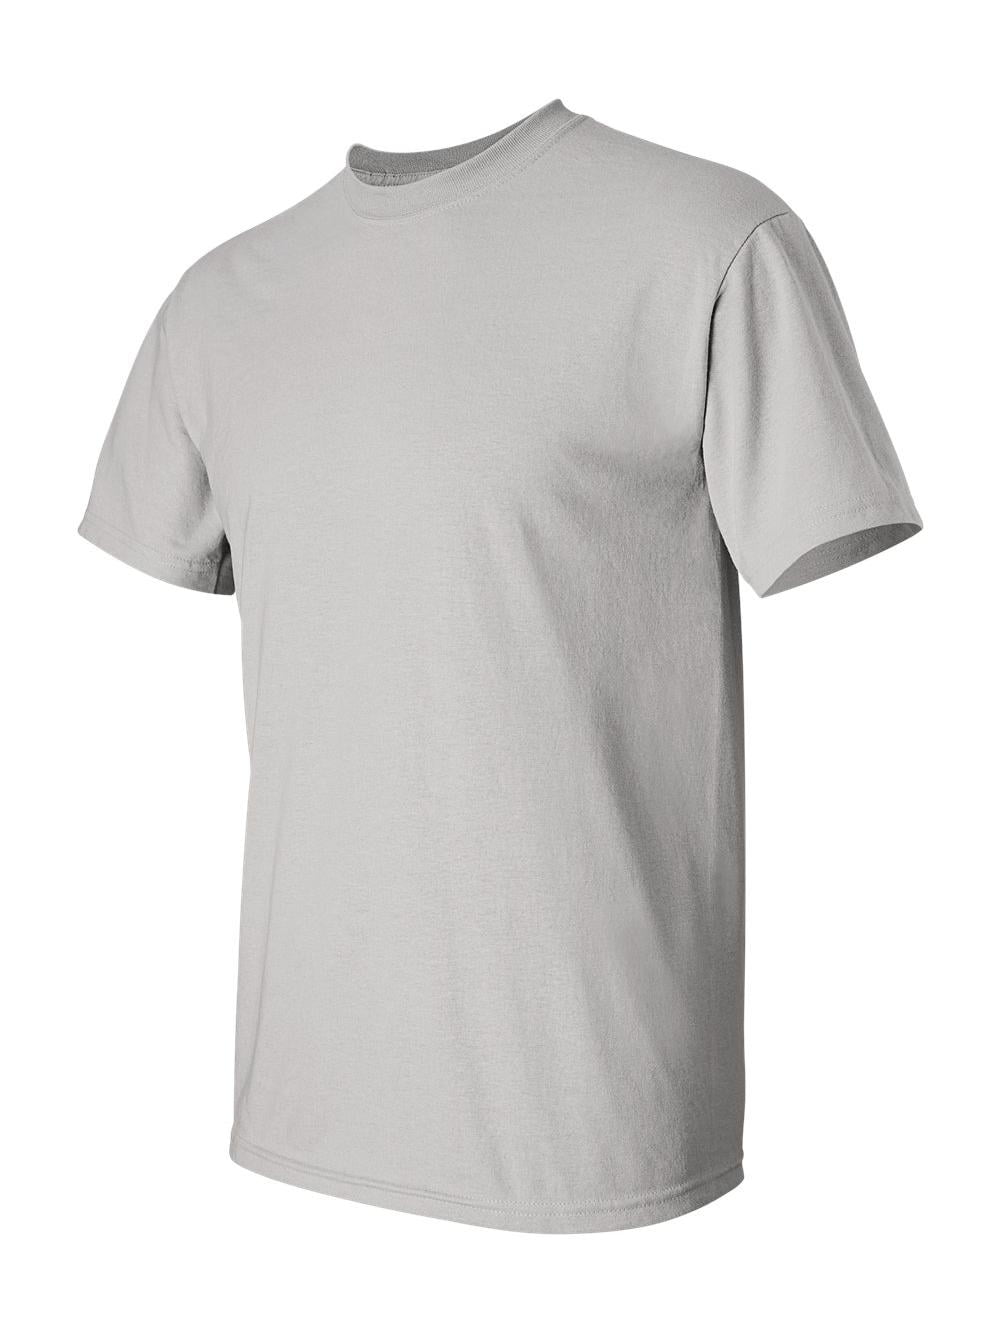 Gildan Mens Ultra Cotton 100% Cotton T-Shirt